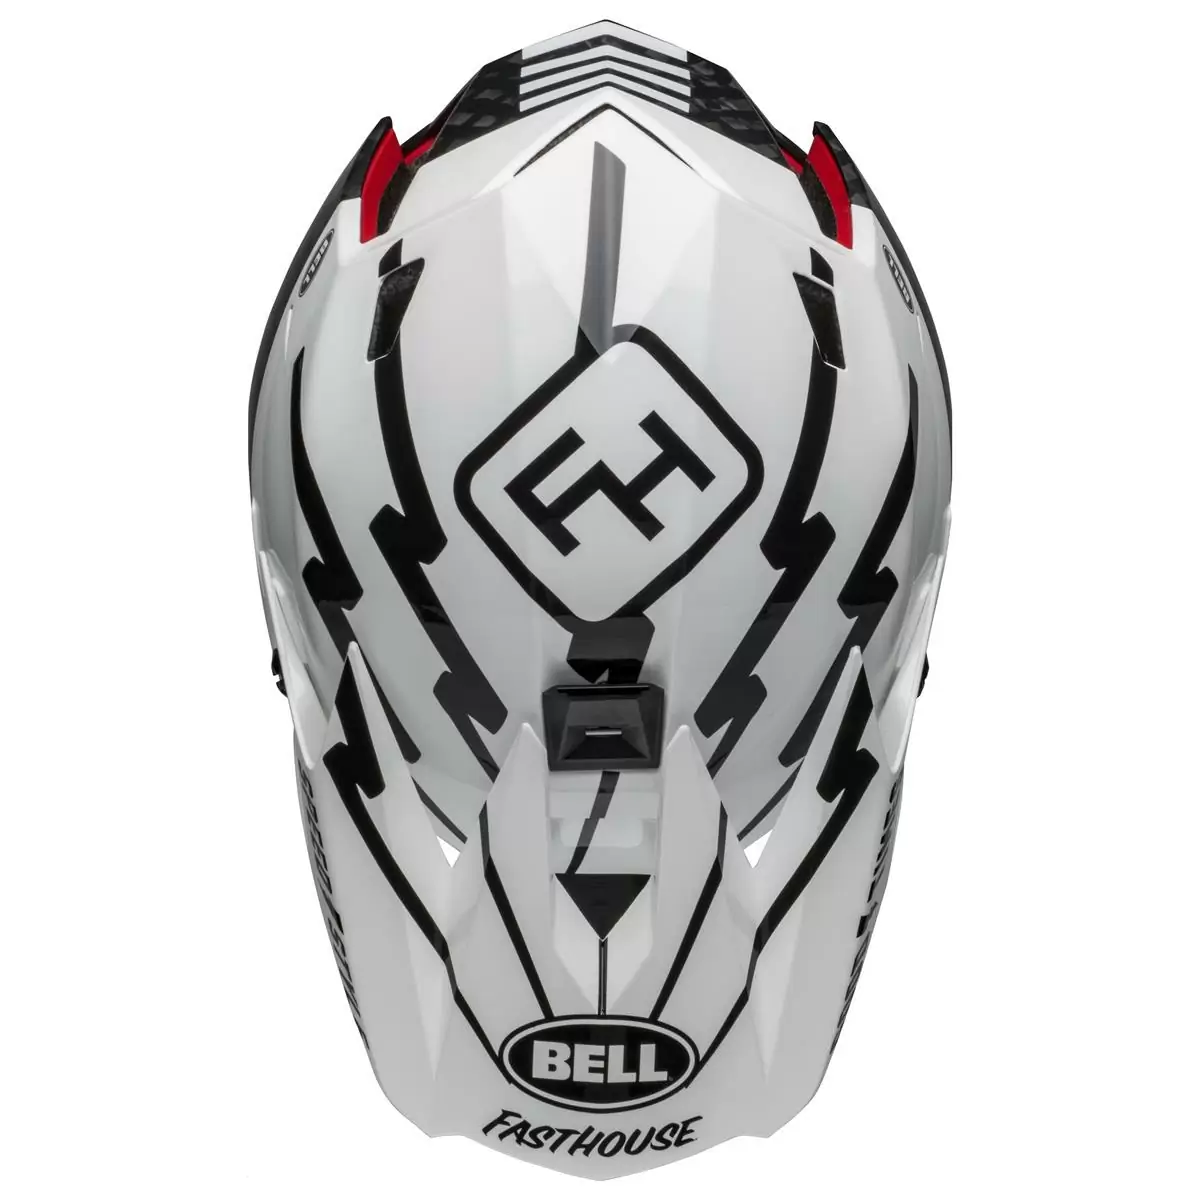 Full-10 Spherical Fasthouse Carbon Full Face Helmet Size XS/S (51-55cm) #8